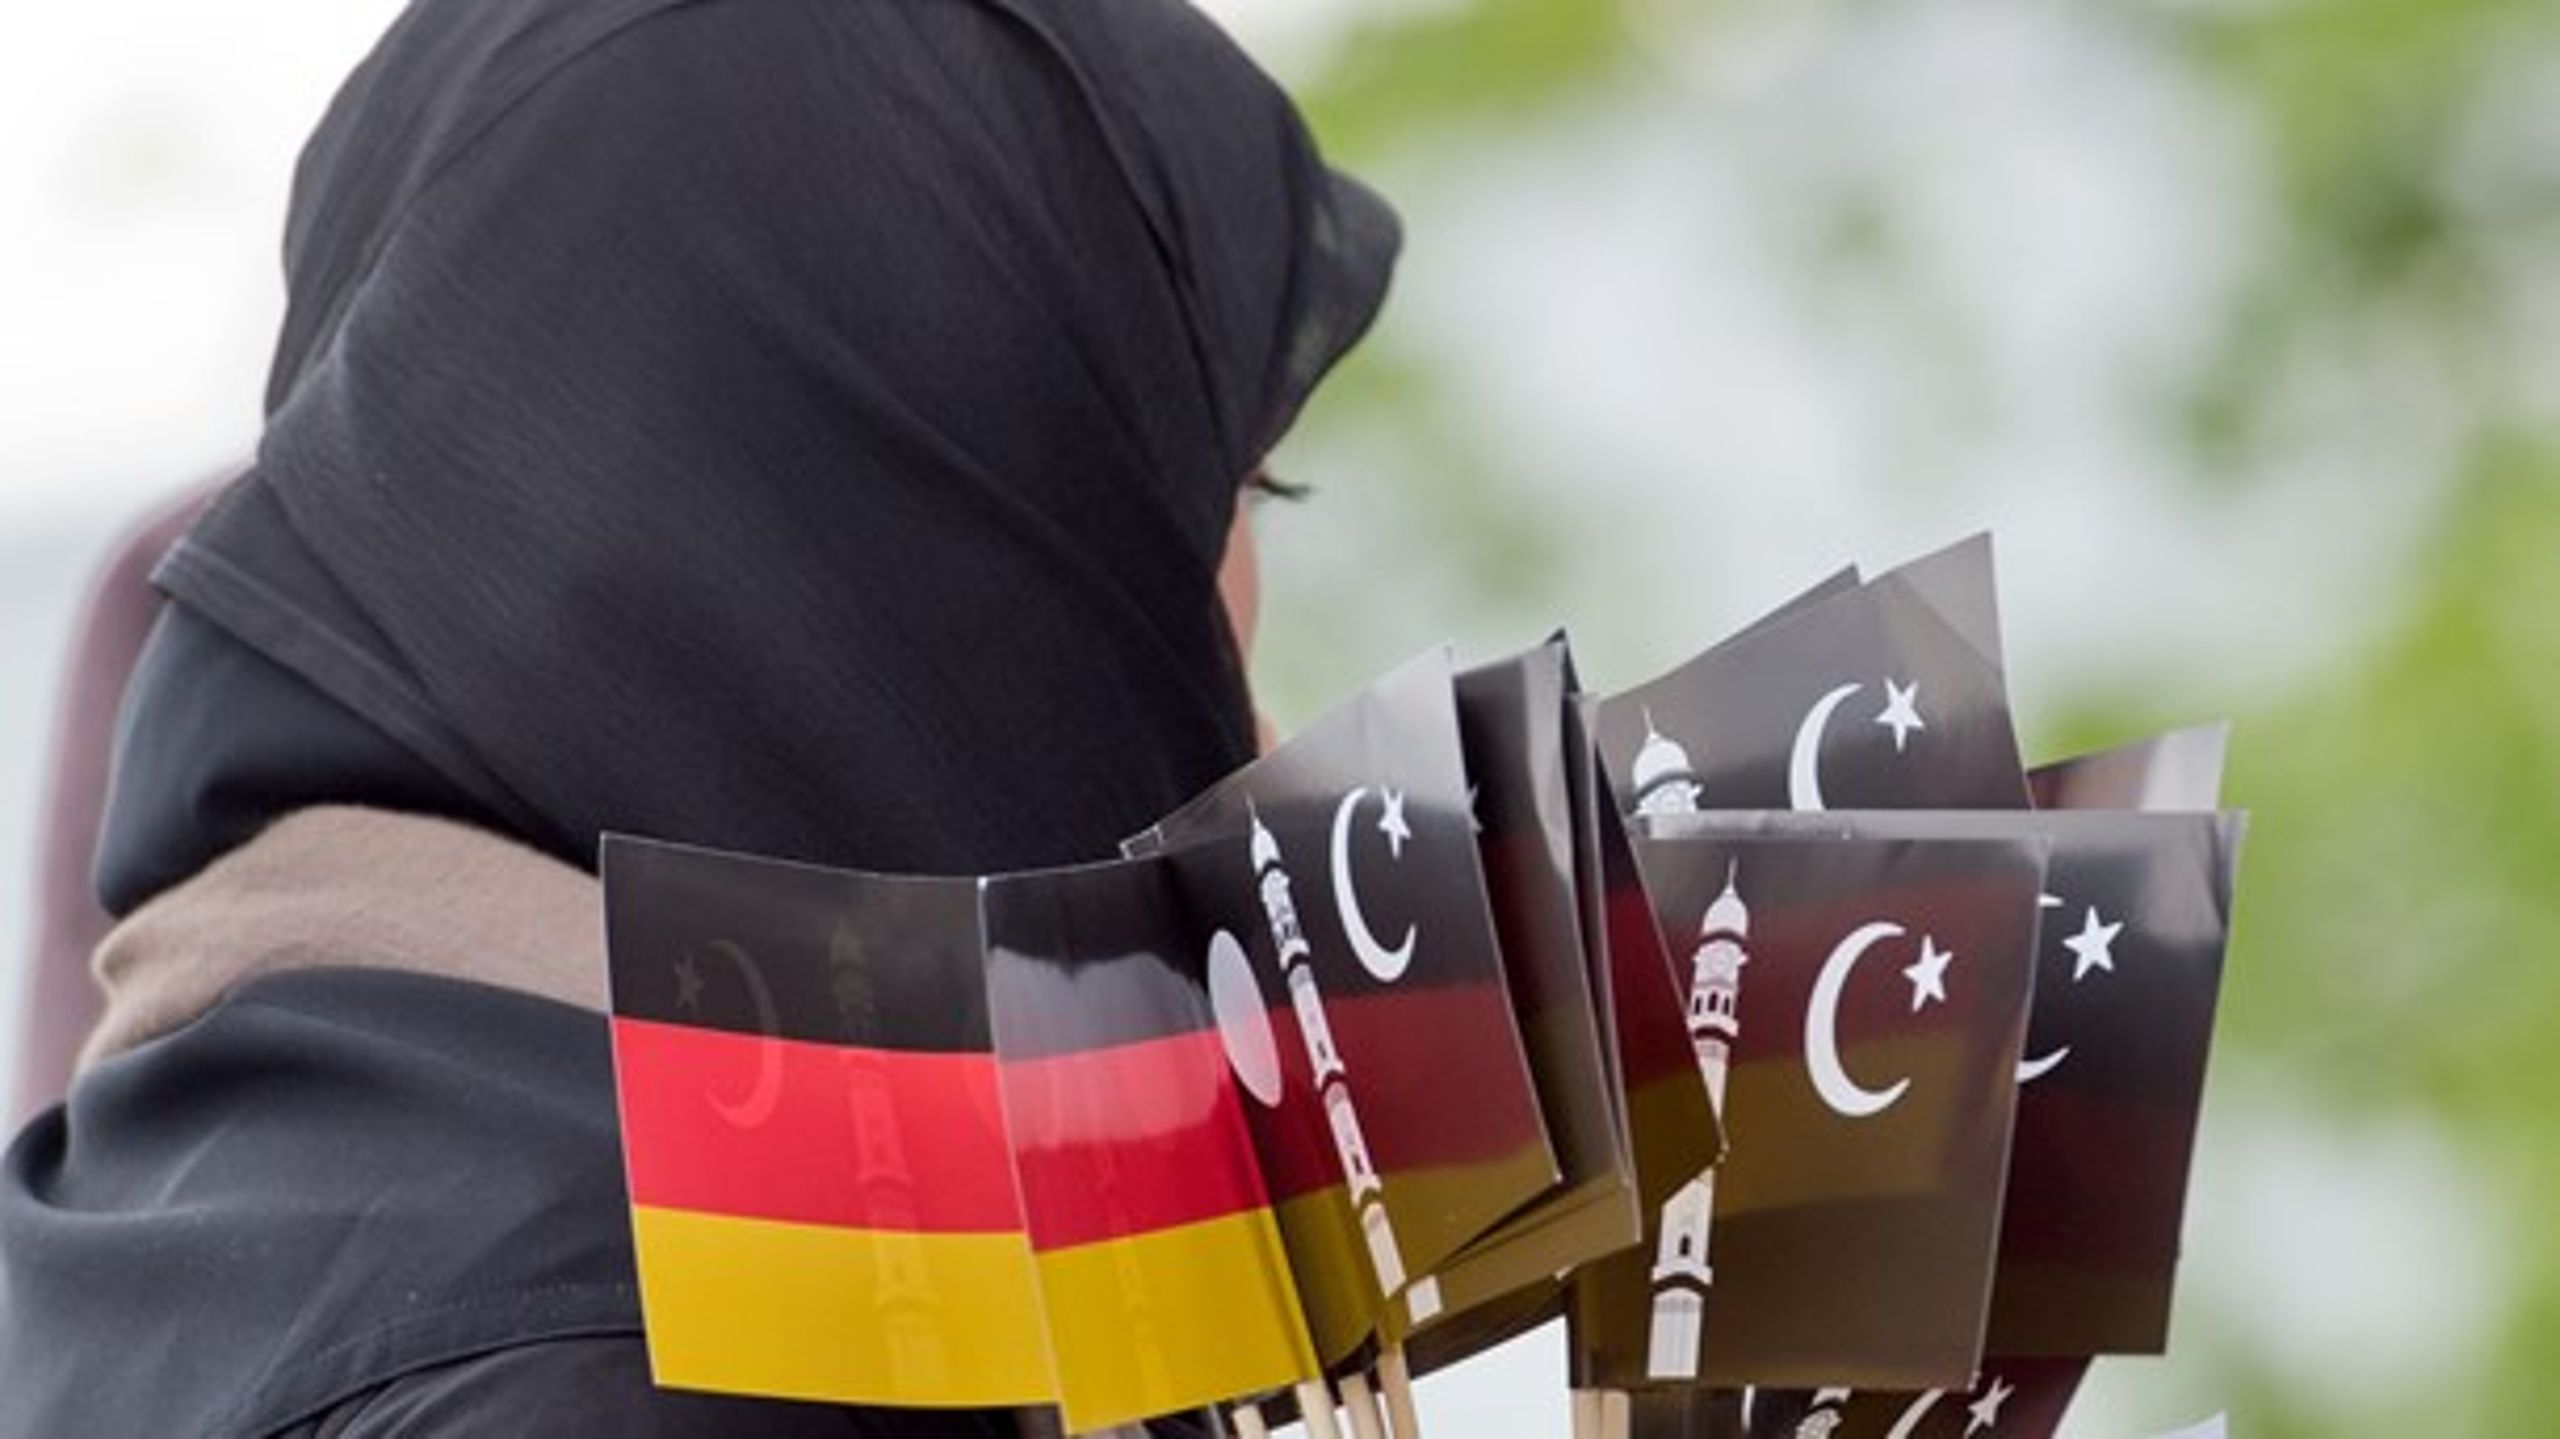 Hvis tilstrømningen af muslimer fortsætter med den kraft, den har haft mellem 2010 og 2016, vil 20 procent af befolkningen i Tyskland være muslimer i 2050, konkluderer ny amerikansk rapport.